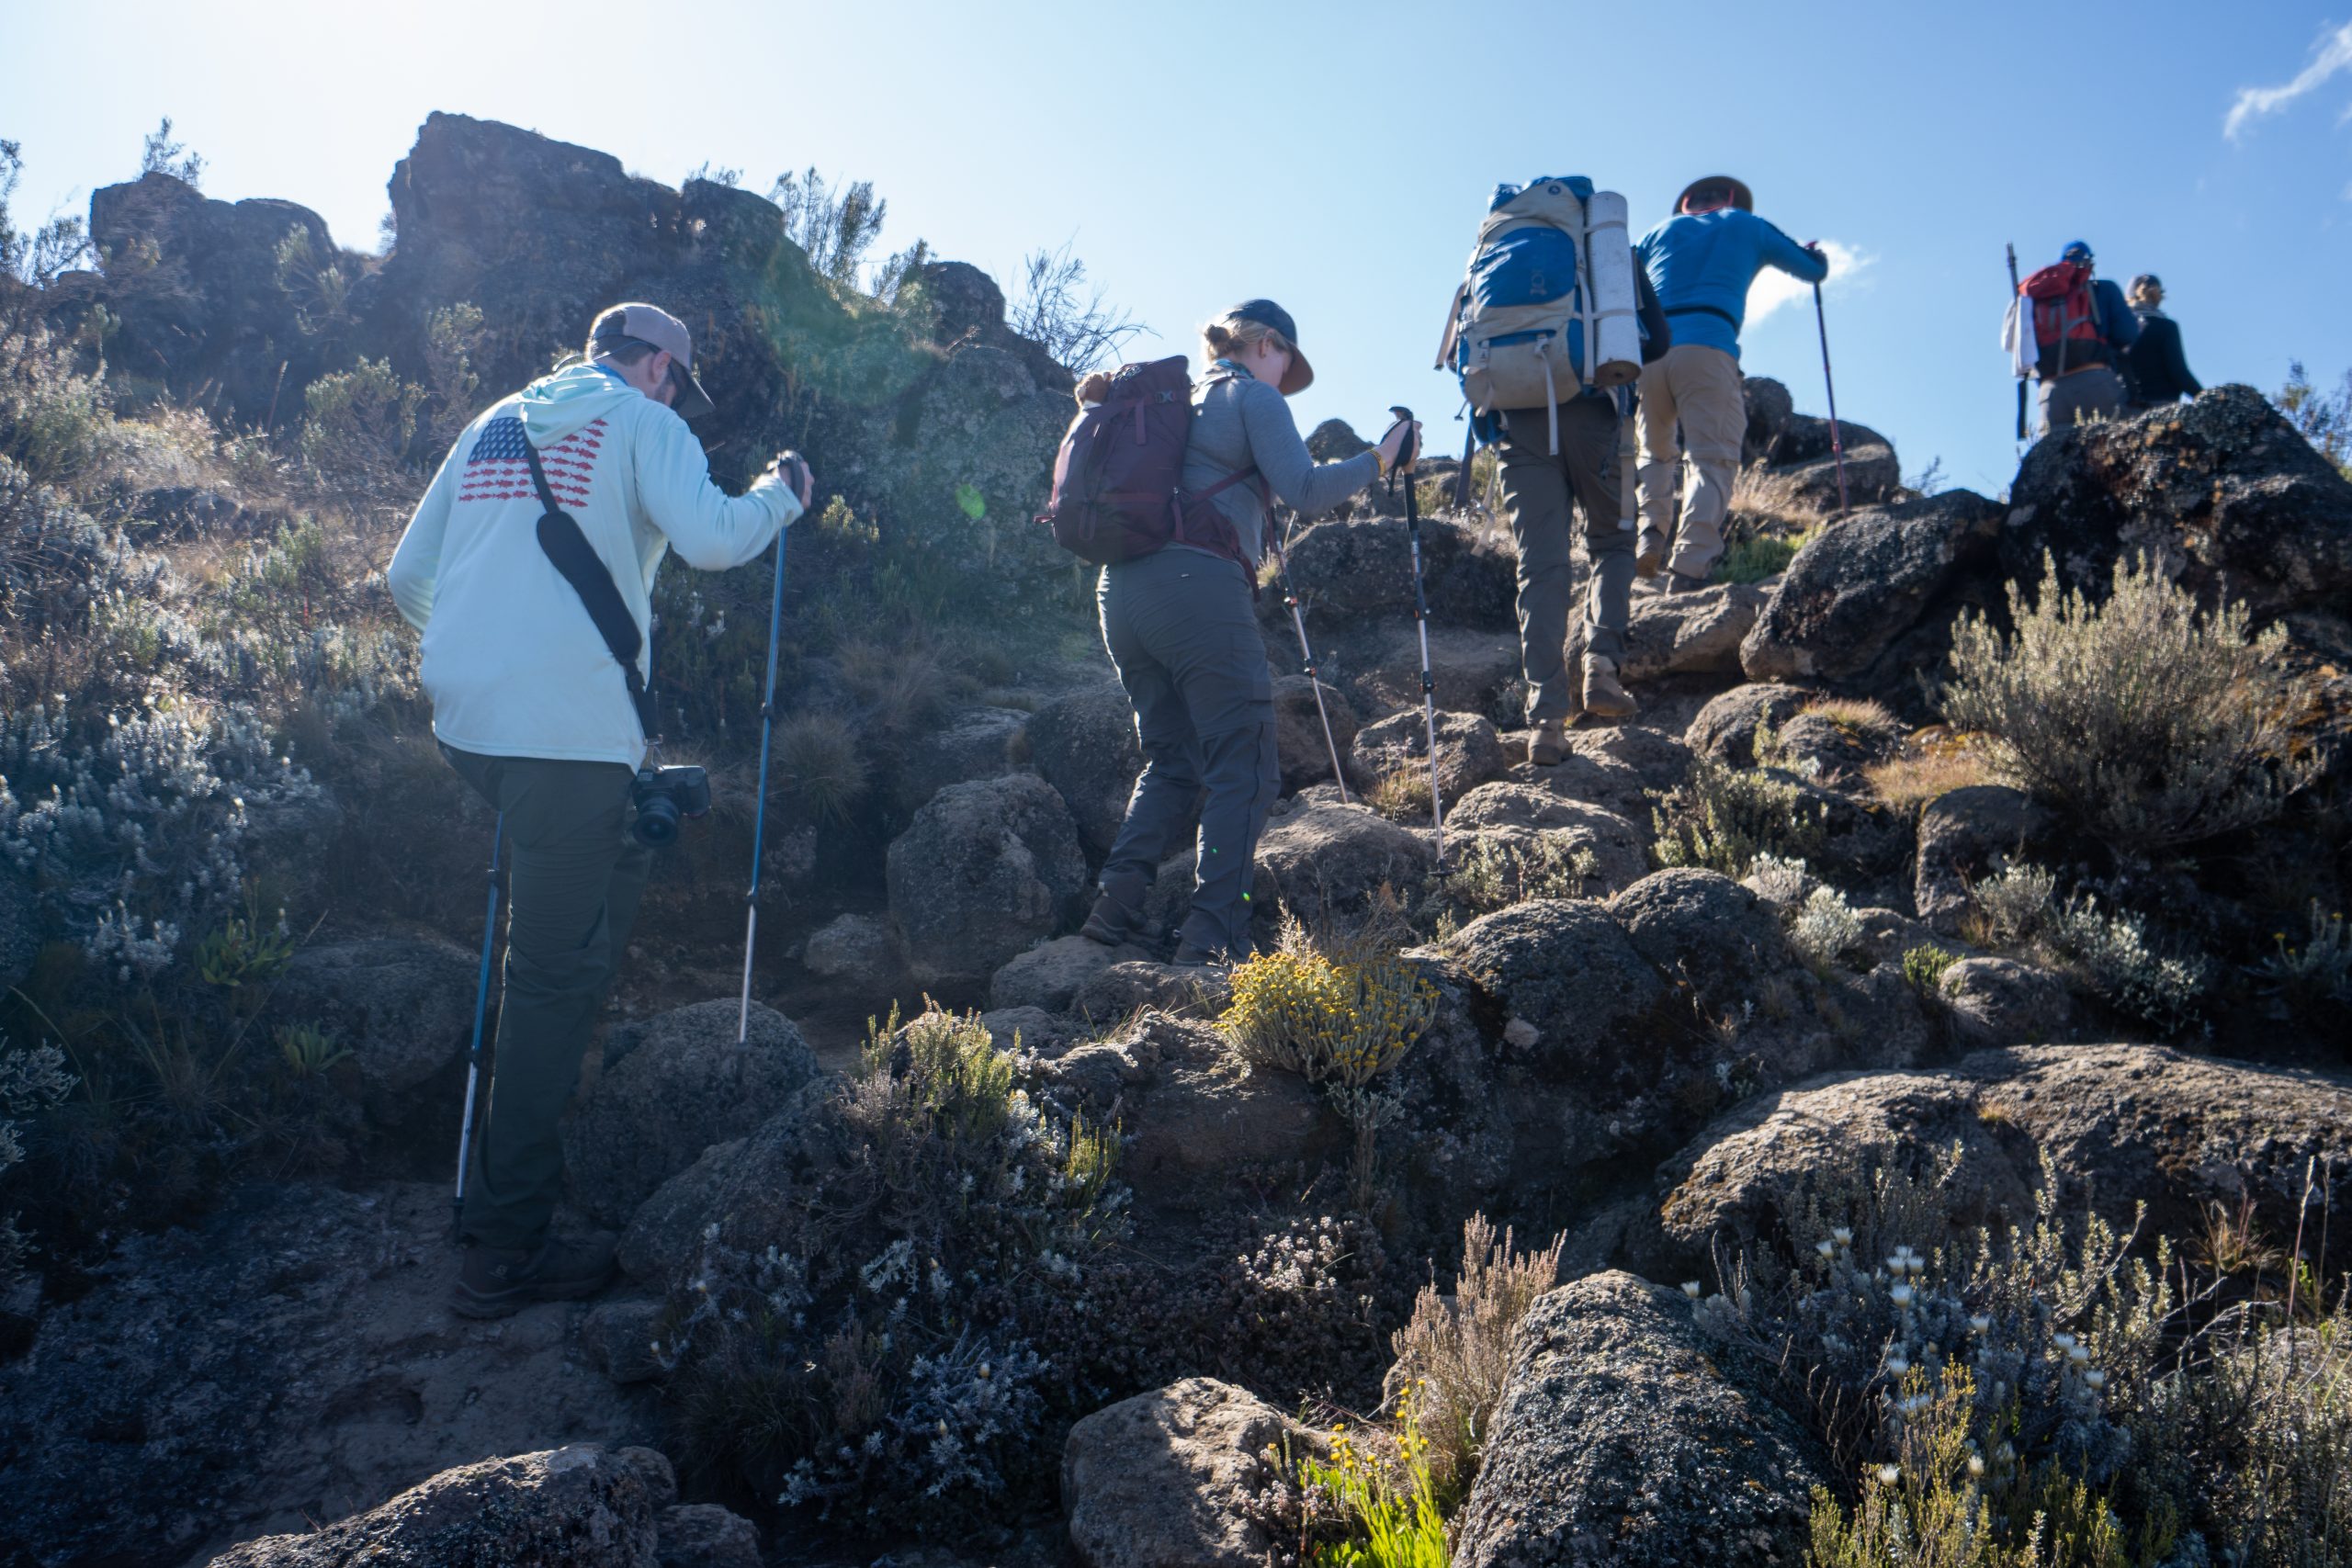 kilimanjaro trail conditions